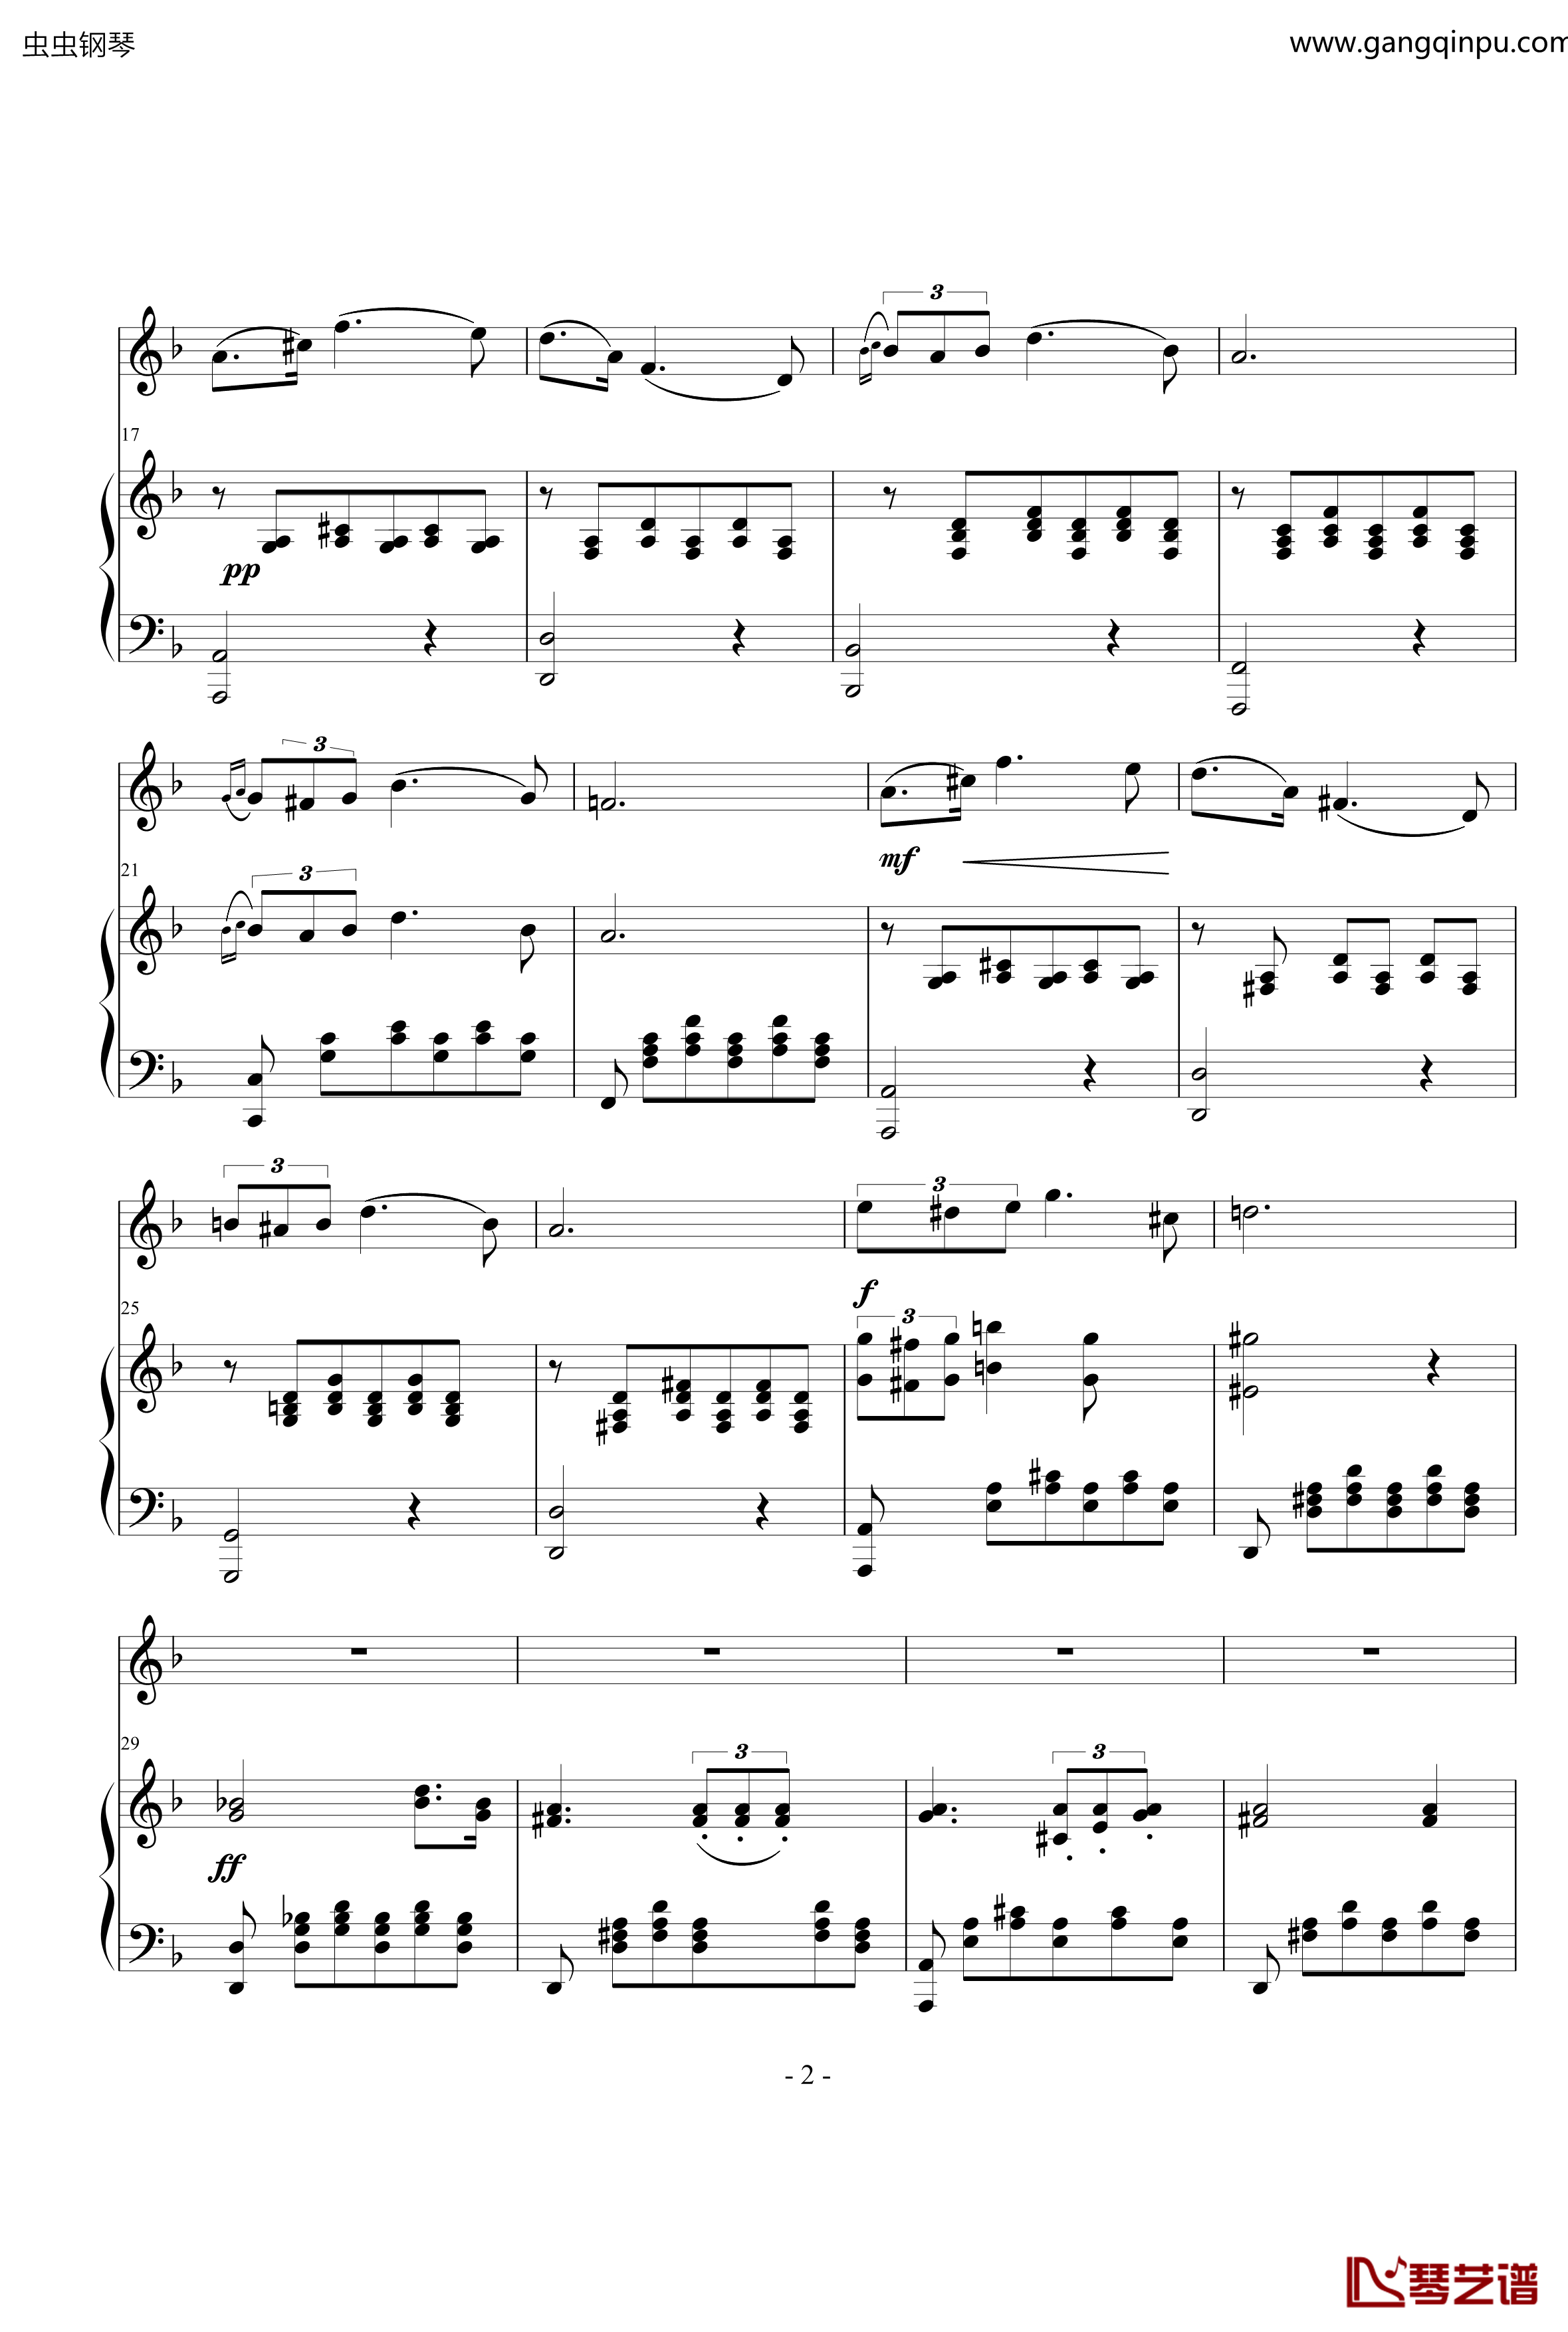 小夜曲钢琴谱-ove 格式长笛笛钢琴伴奏-舒伯特2